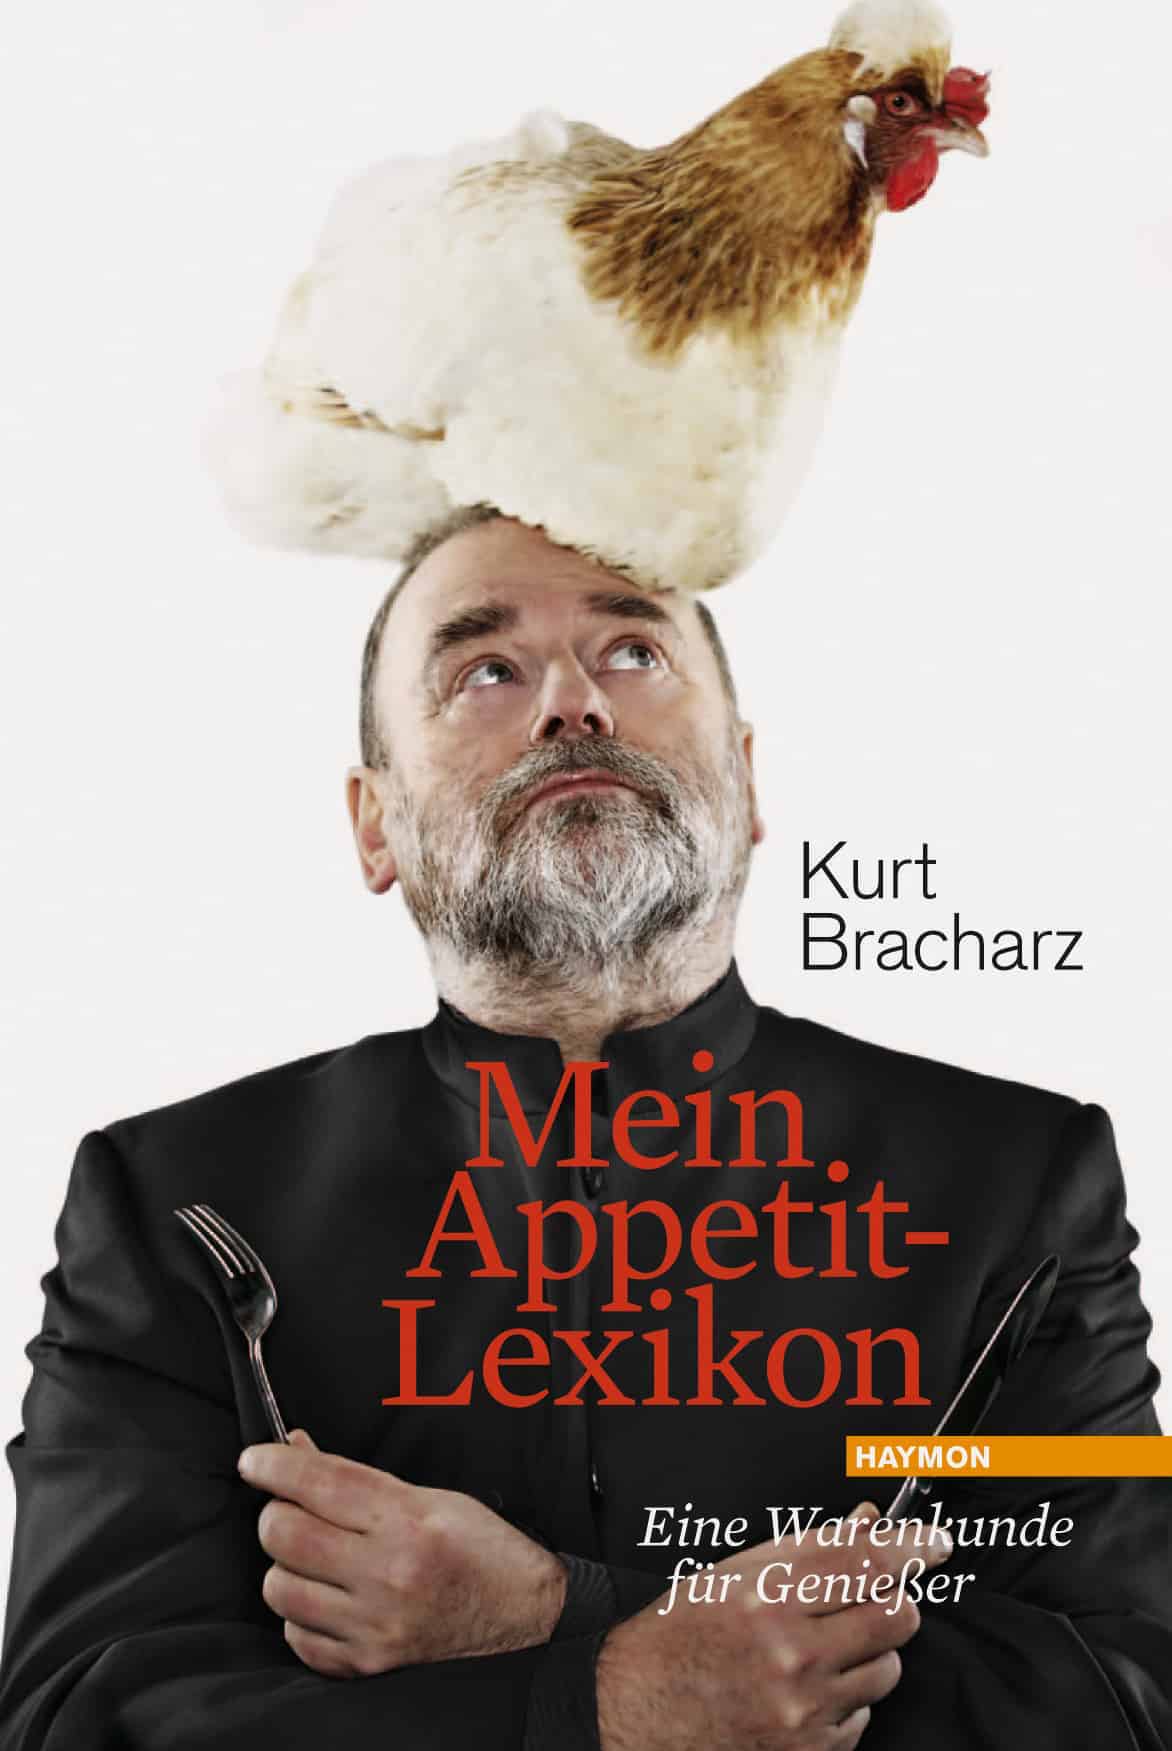 Kurt Bracharz auf dem Cover seines Gastro-Buches 'Mein Appetit-Lexikon" (Bild: Haymon)